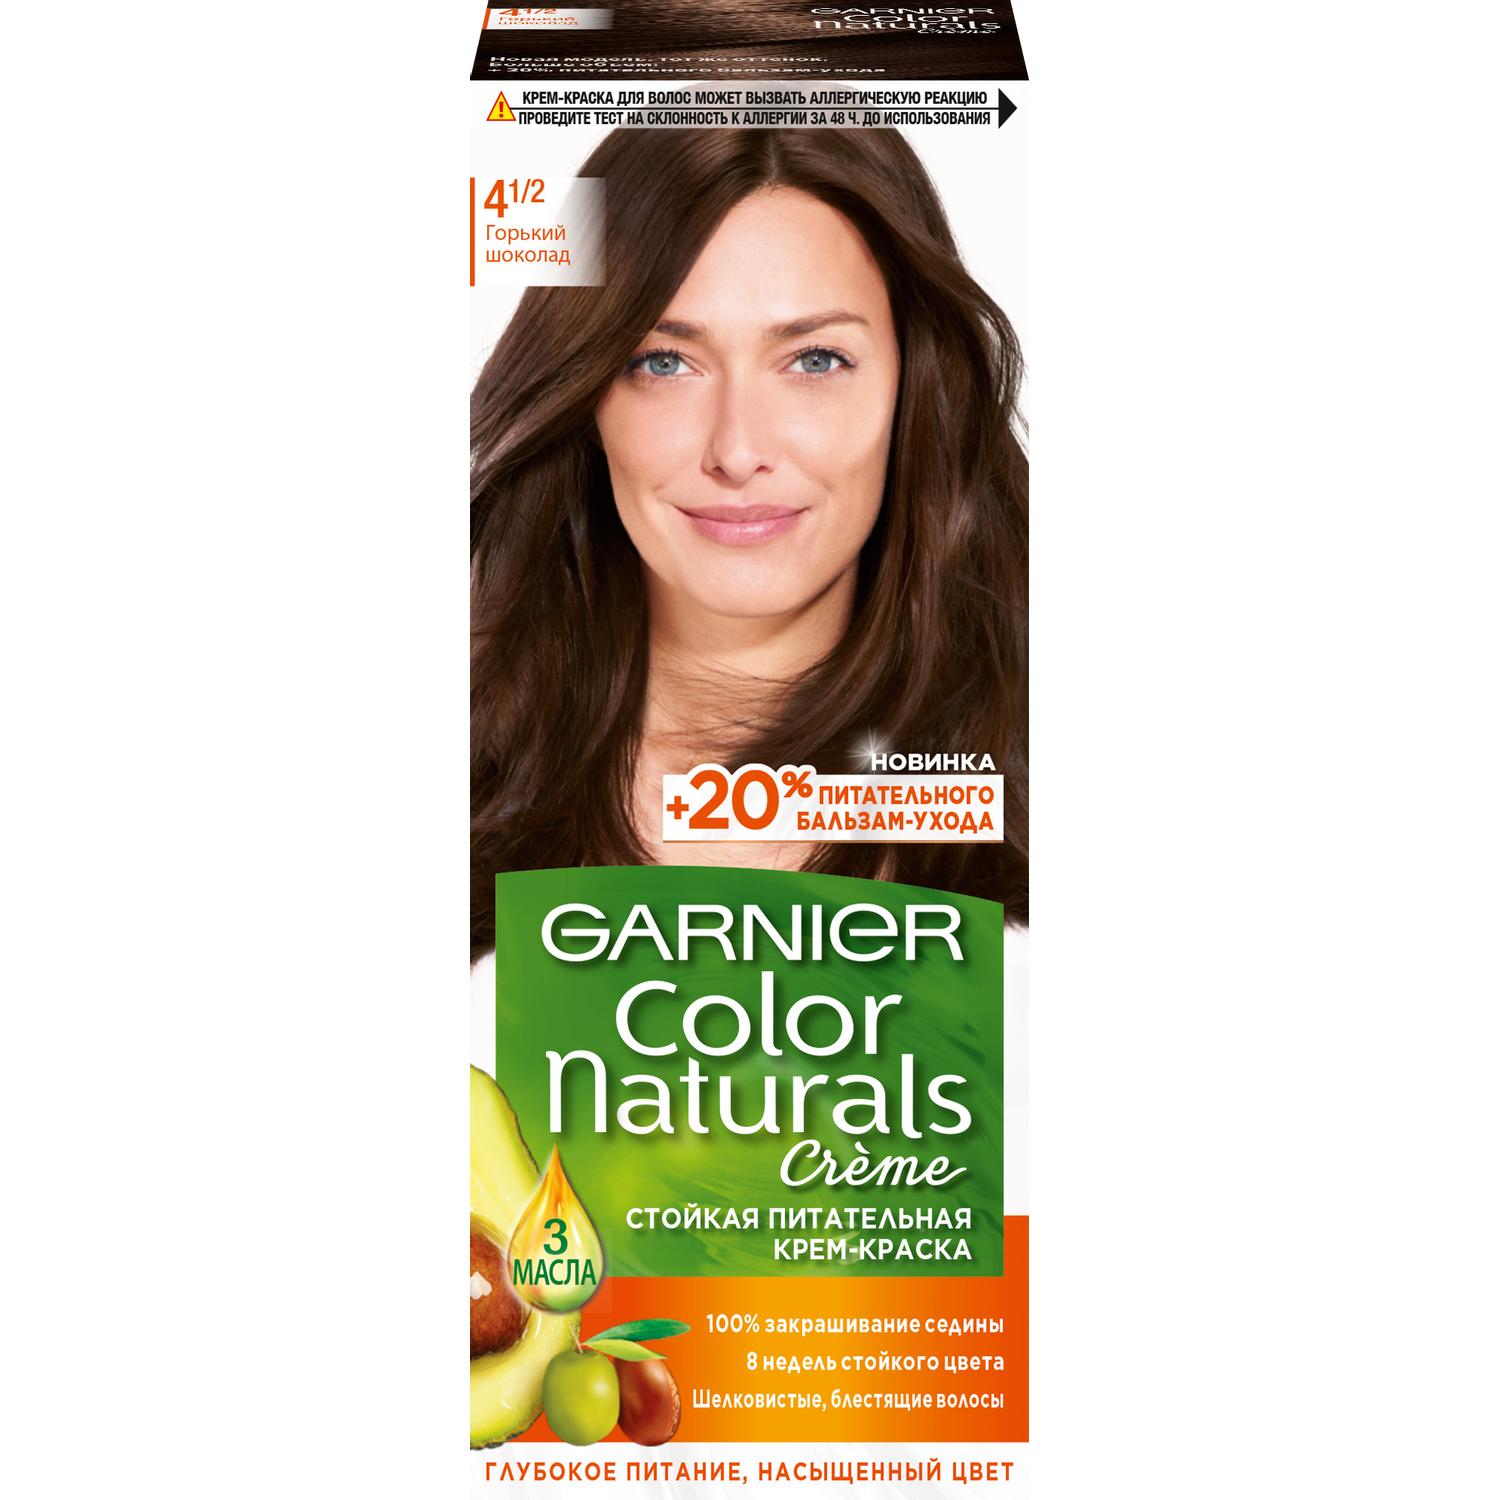 Крем-краска для волос Garnier Color Naturals 4.1/2 Горький Шоколад 110 мл крем краска для волос rowena soft silk тон 3 3 горький шоколад